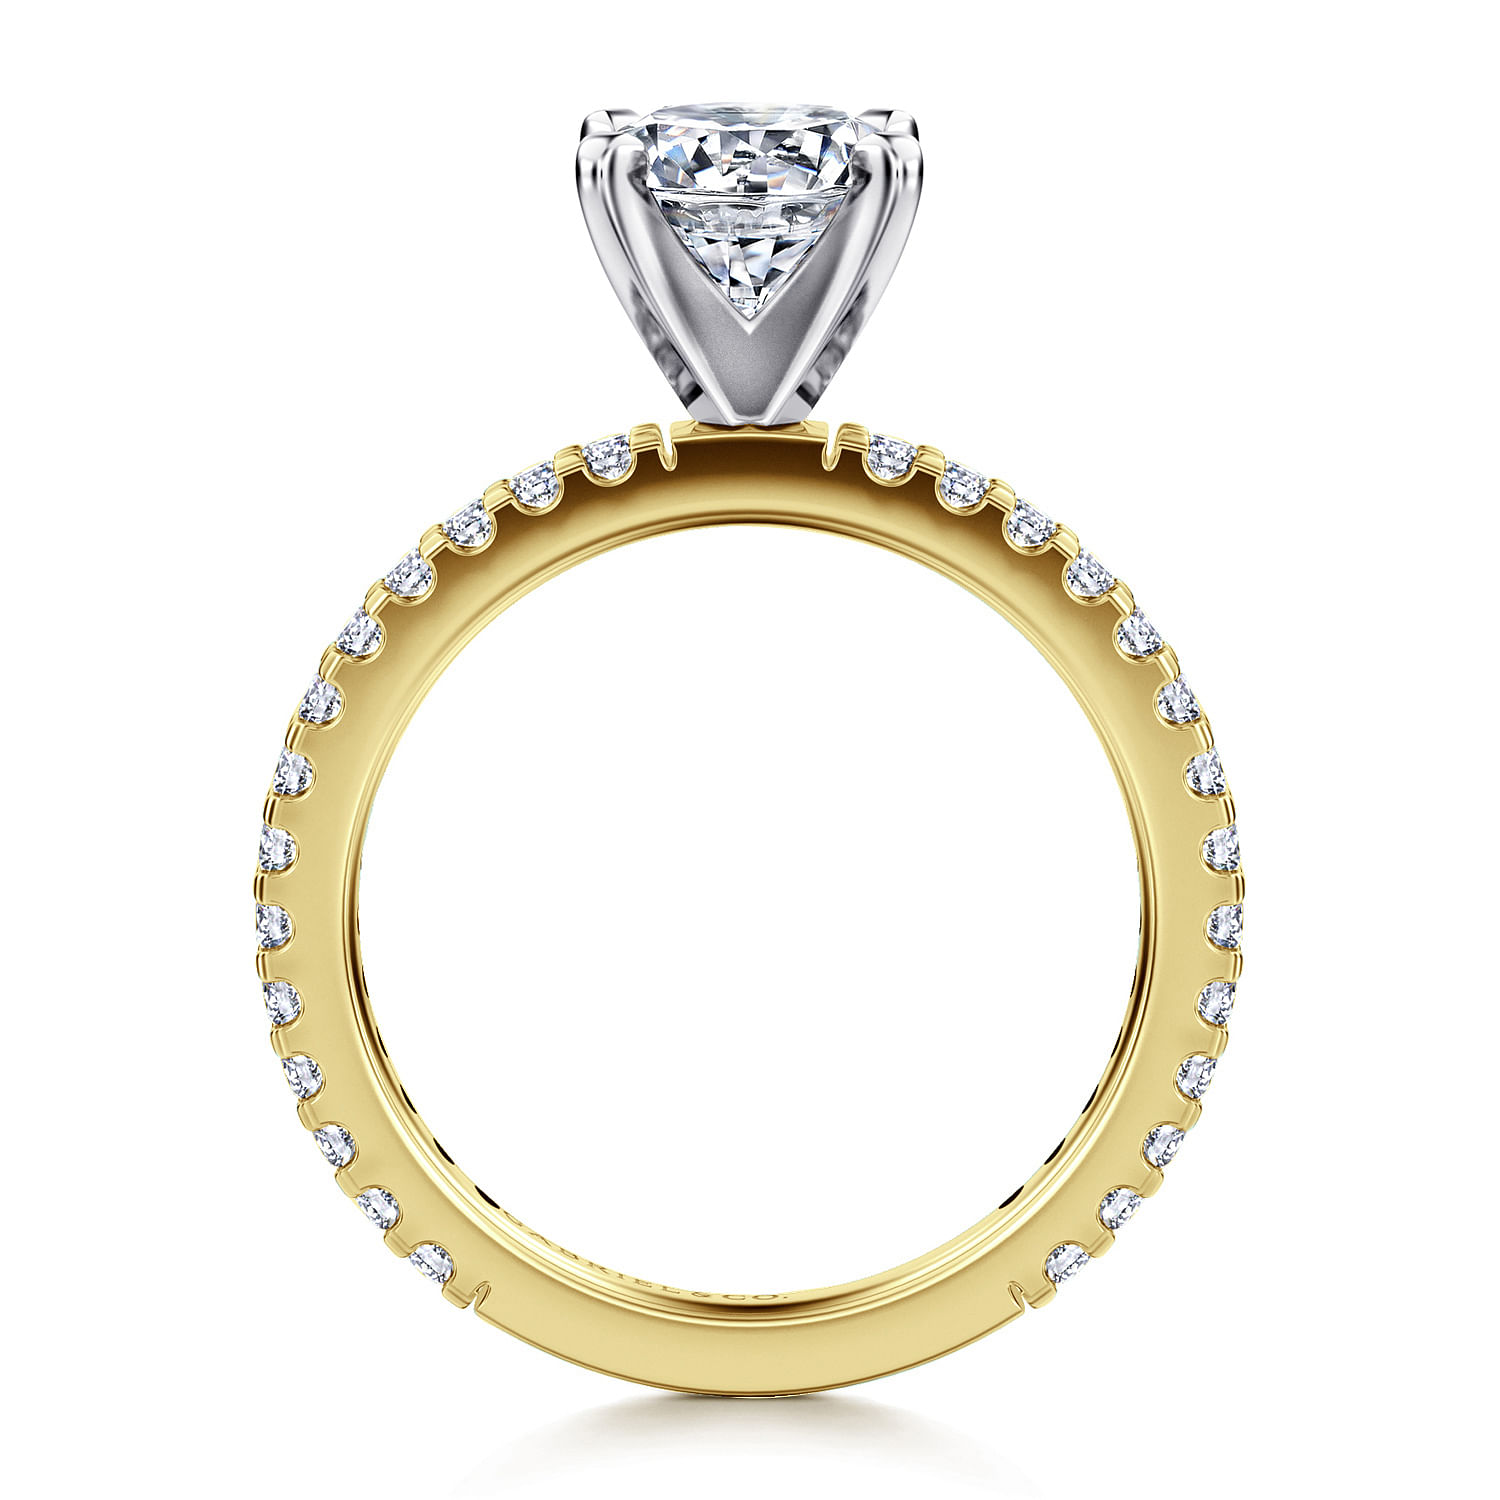 14K Yellow and White Gold Round Diamond Engagement Ring